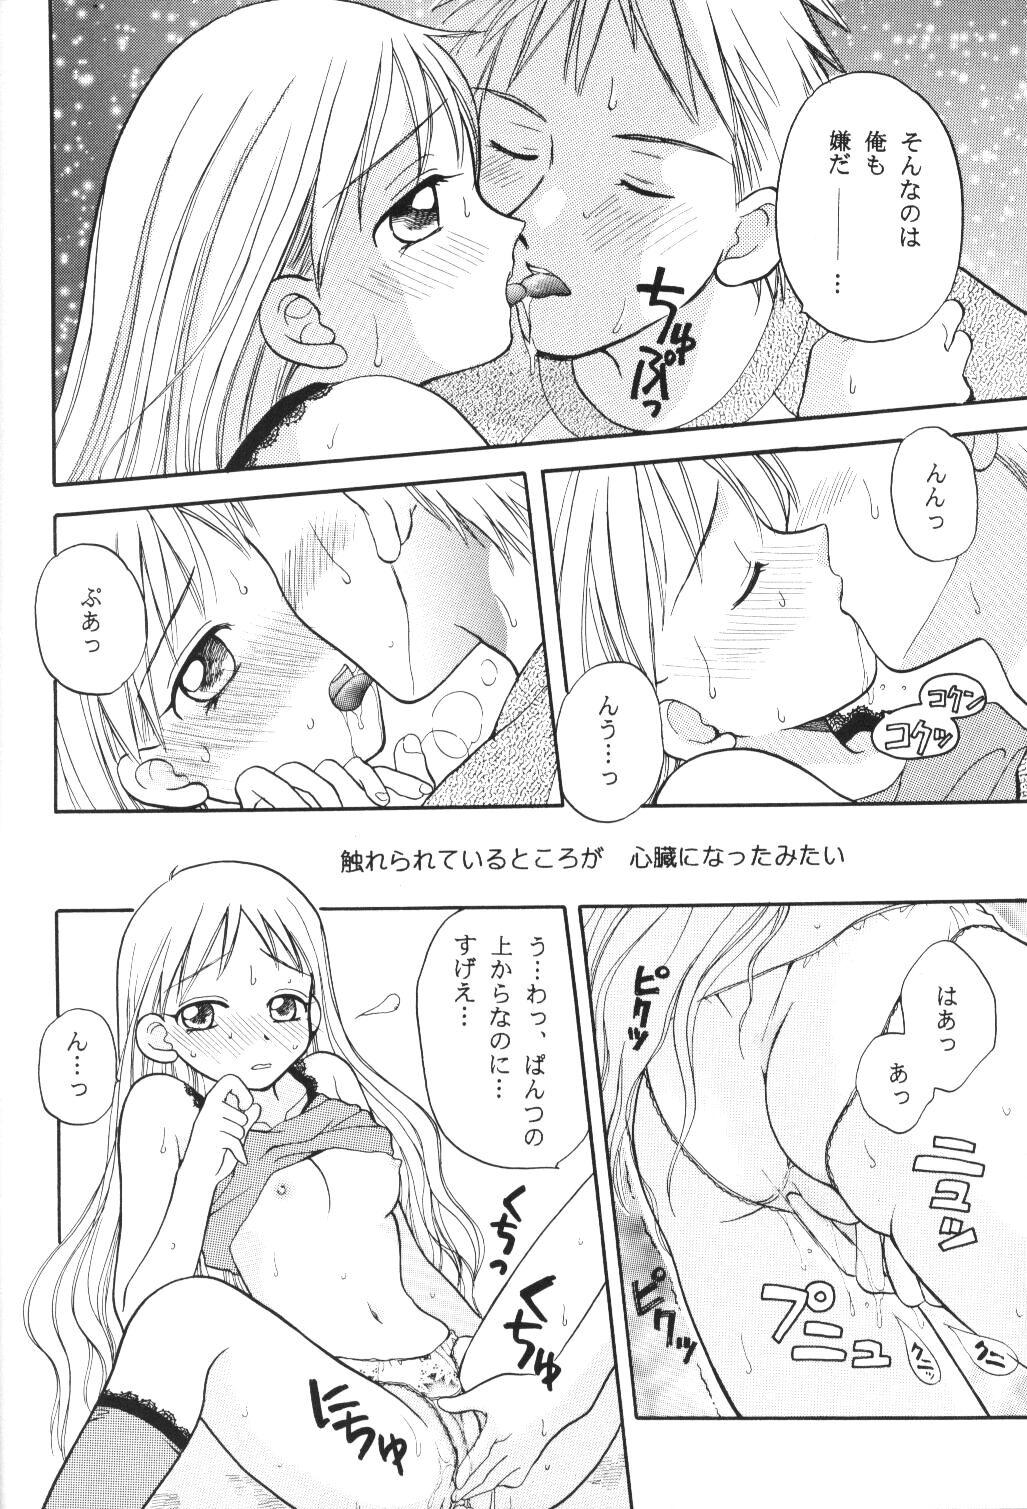 Sucking Dick Tenshi no Girigiri - Kare kano Interacial - Page 11